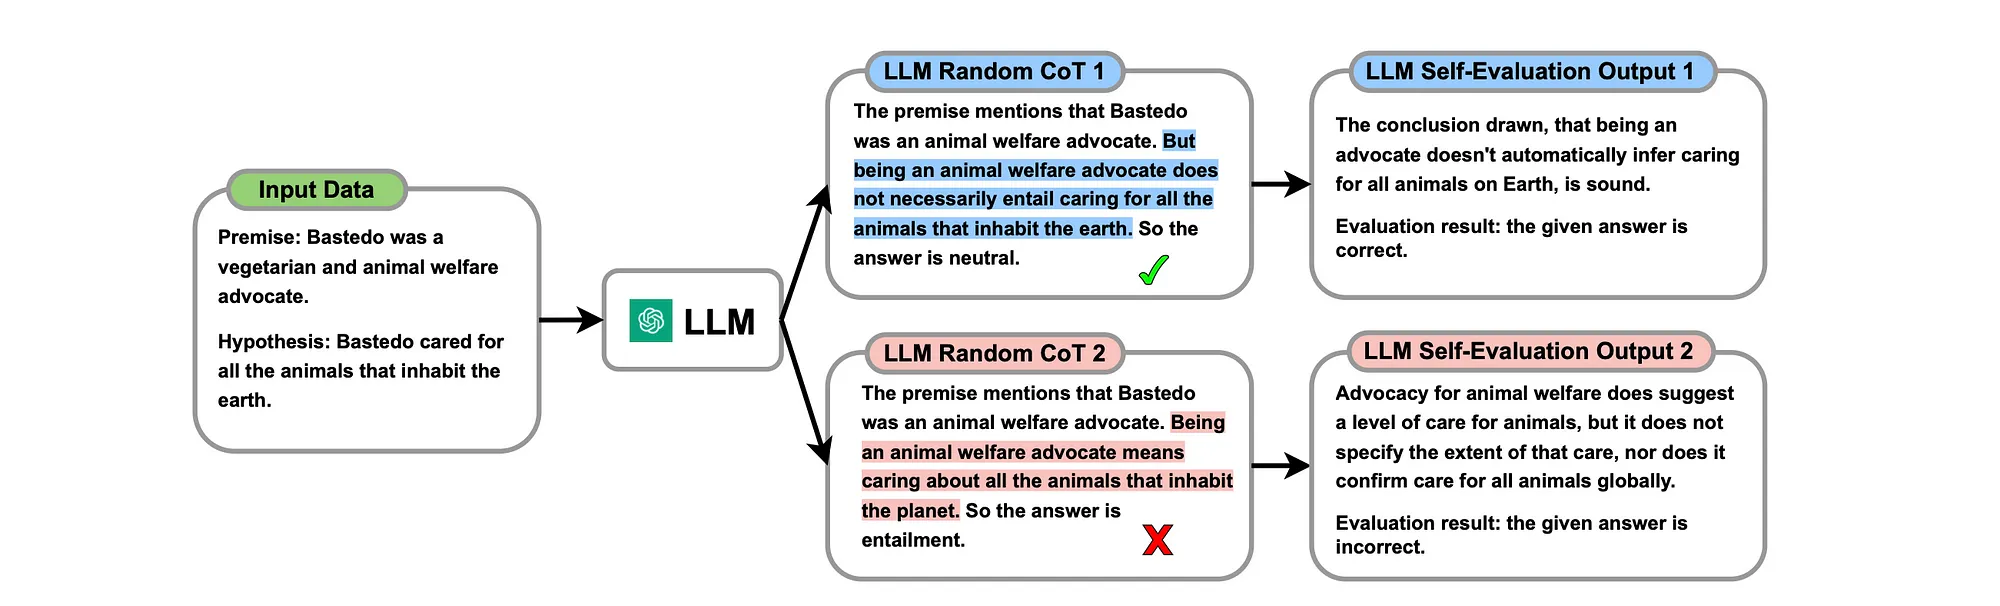 LLM self-evaluation, имитирующая человеческое мышление, дает модели возможность самостоятельно анализировать и оценивать корректность сгенерированных цепочек рассуждений. Она может выявлять правильные умозаключения, которые выделяются синим цветом, и ошибки, помеченные красным. https://arxiv.org/pdf/2311.09214.pdf